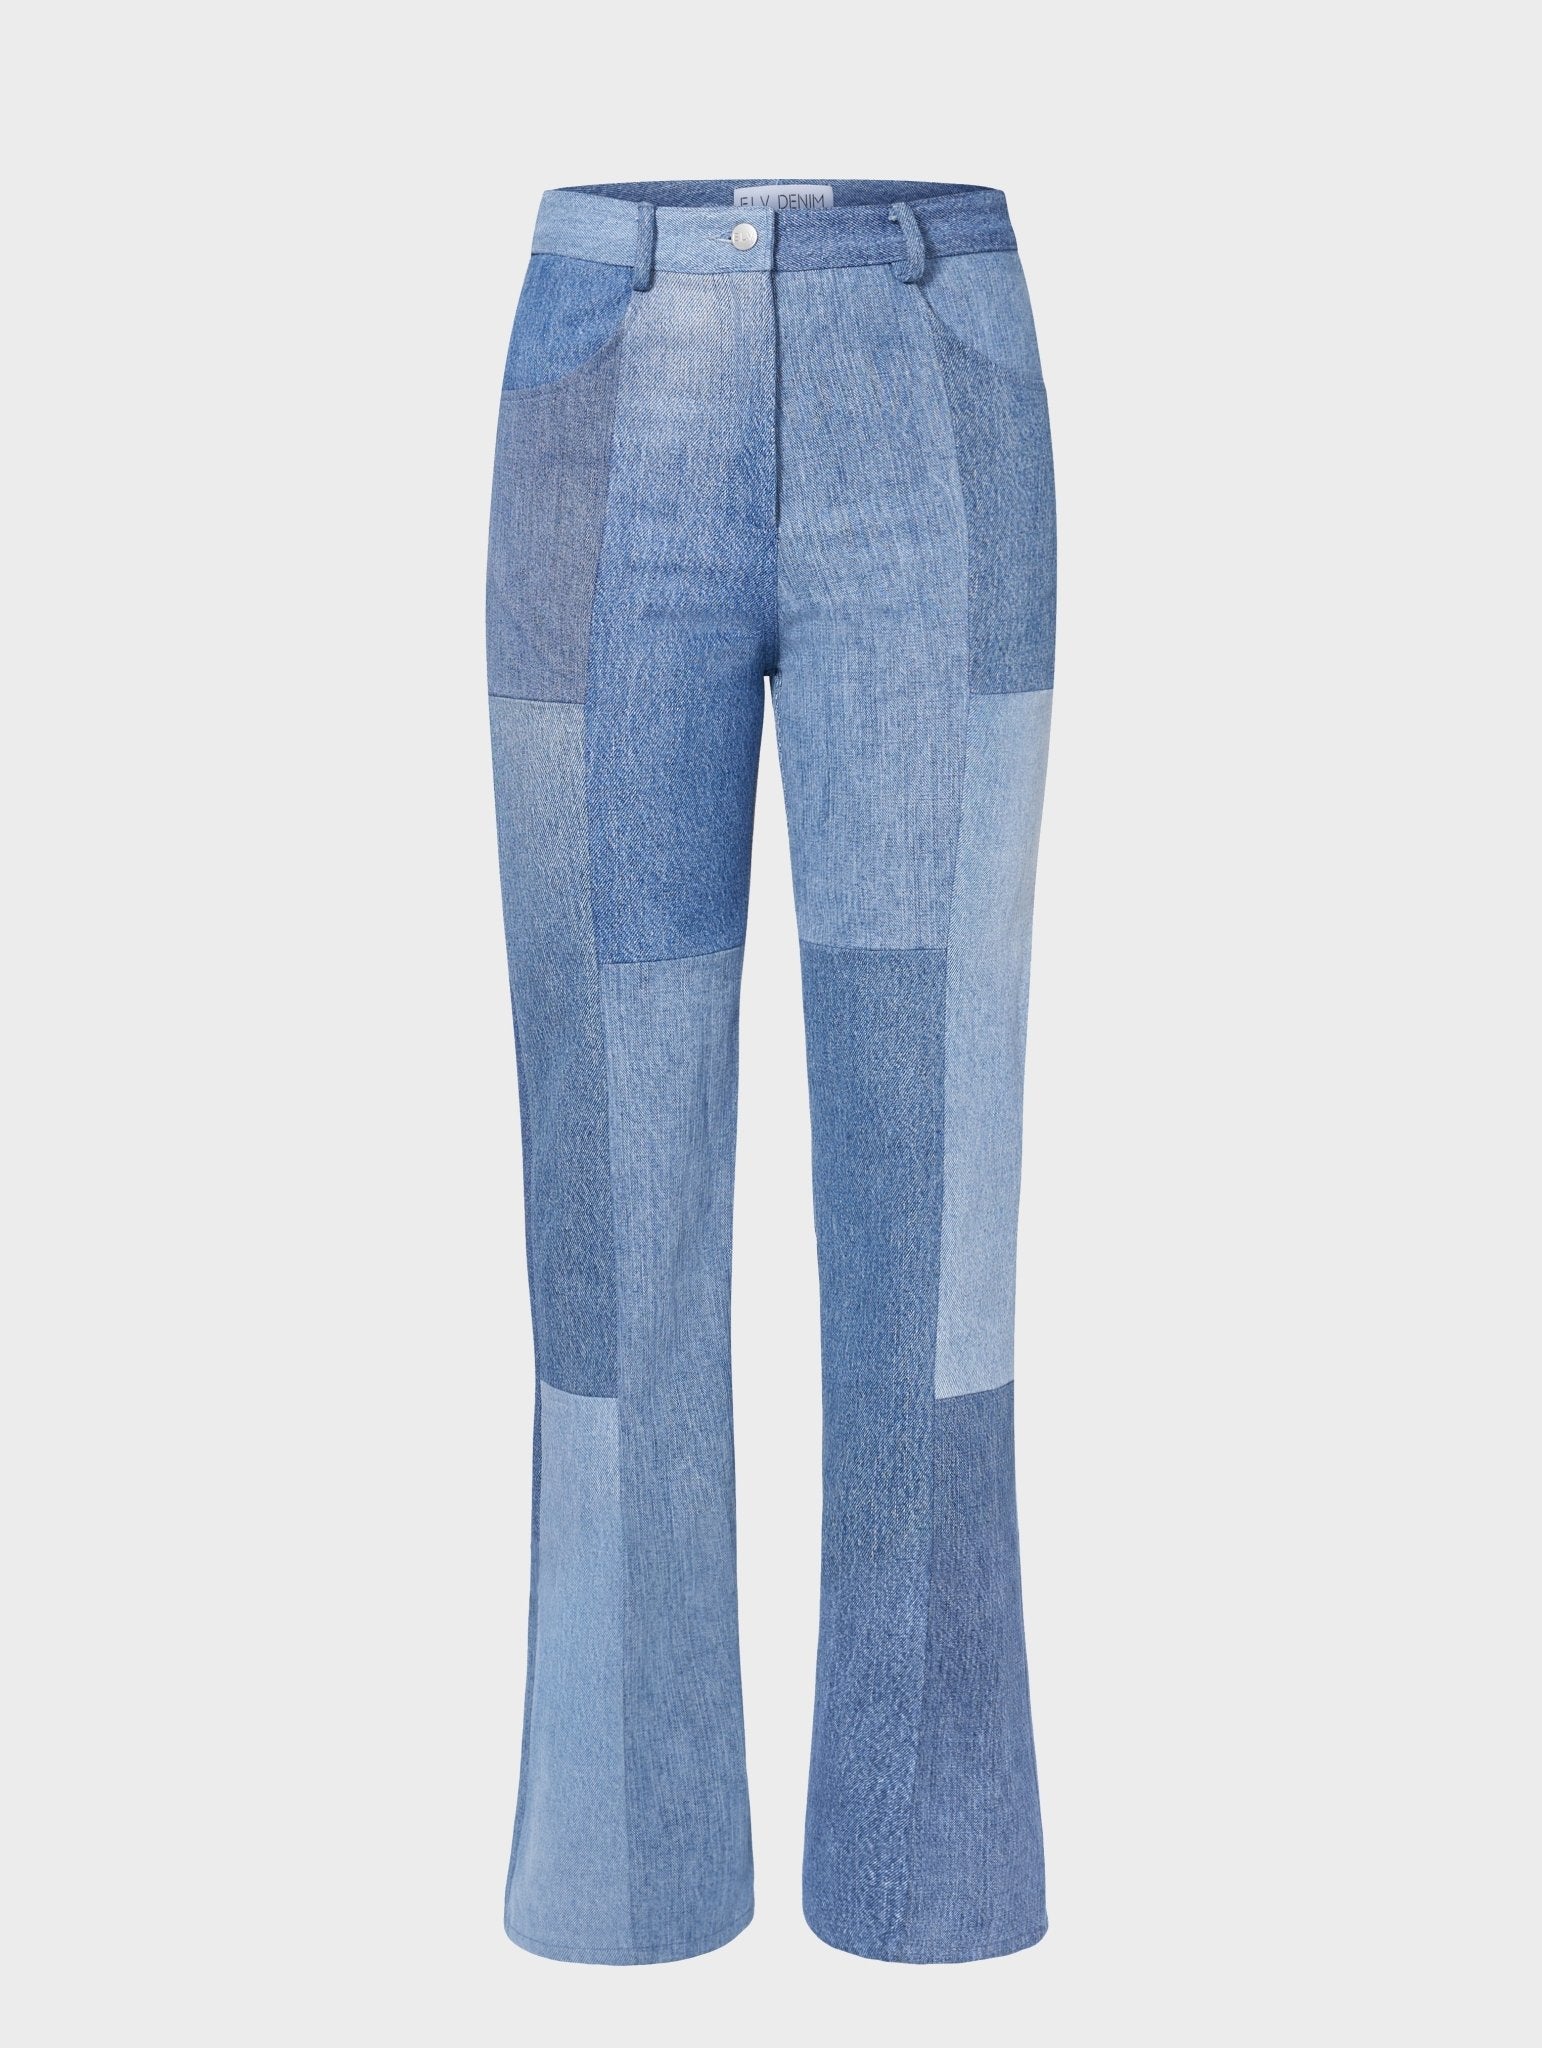 Upcycled patchwork wide leg jeans- regular blue or BLACK denim – Heke design